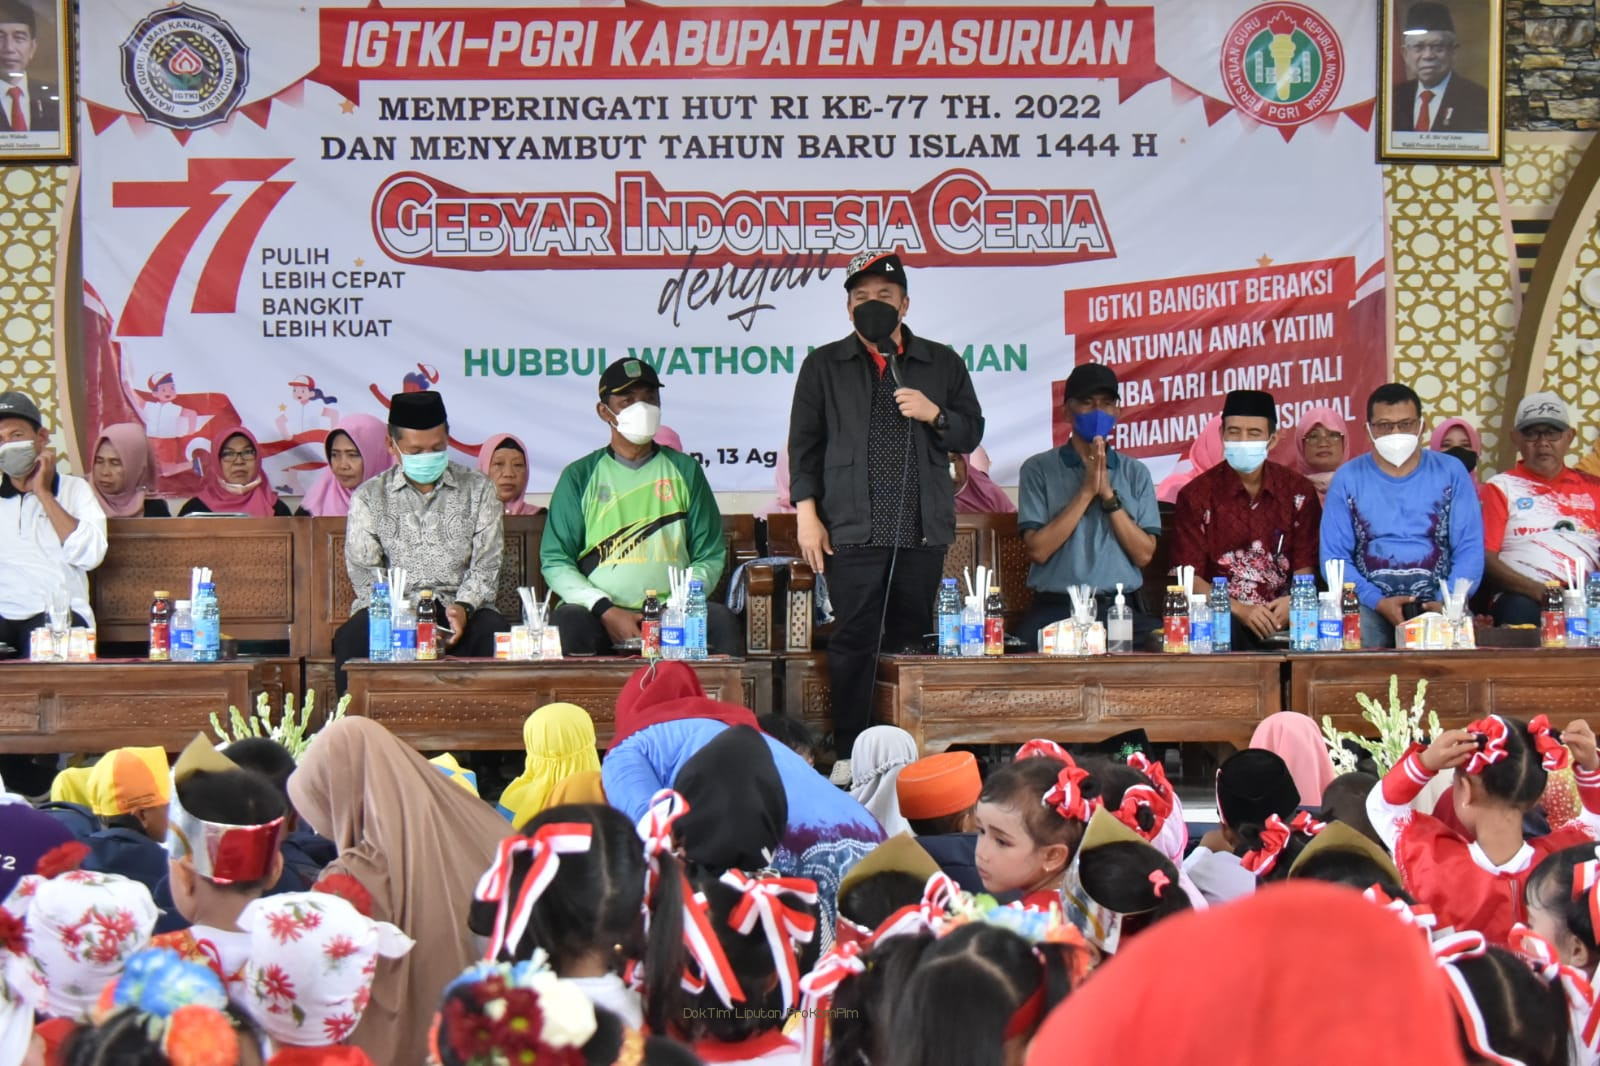 Gebyar Indonesia Ceria IGTKI-PGRI, Wakil Bupati Ajak Guru Kawal Pendidikan Anak Sampai Jenjang Paling Tinggi 